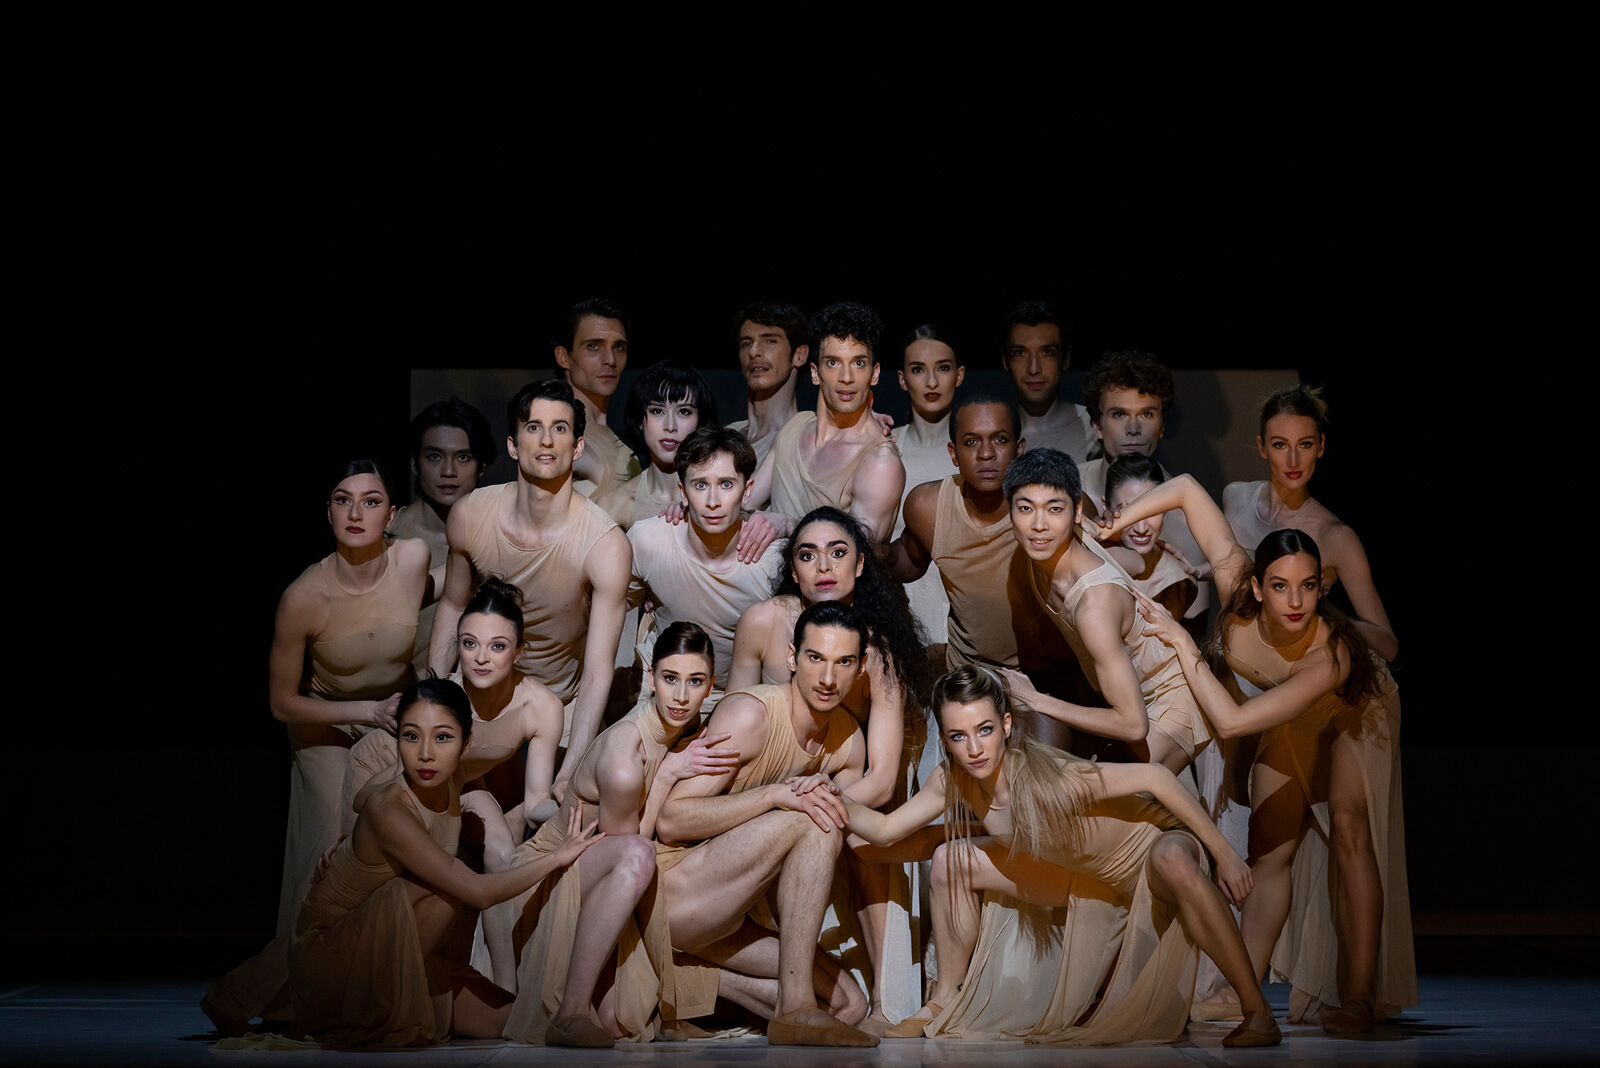 Tous les hommes presque toujours simaginent Ballet - Copyright Andrej Uspensky